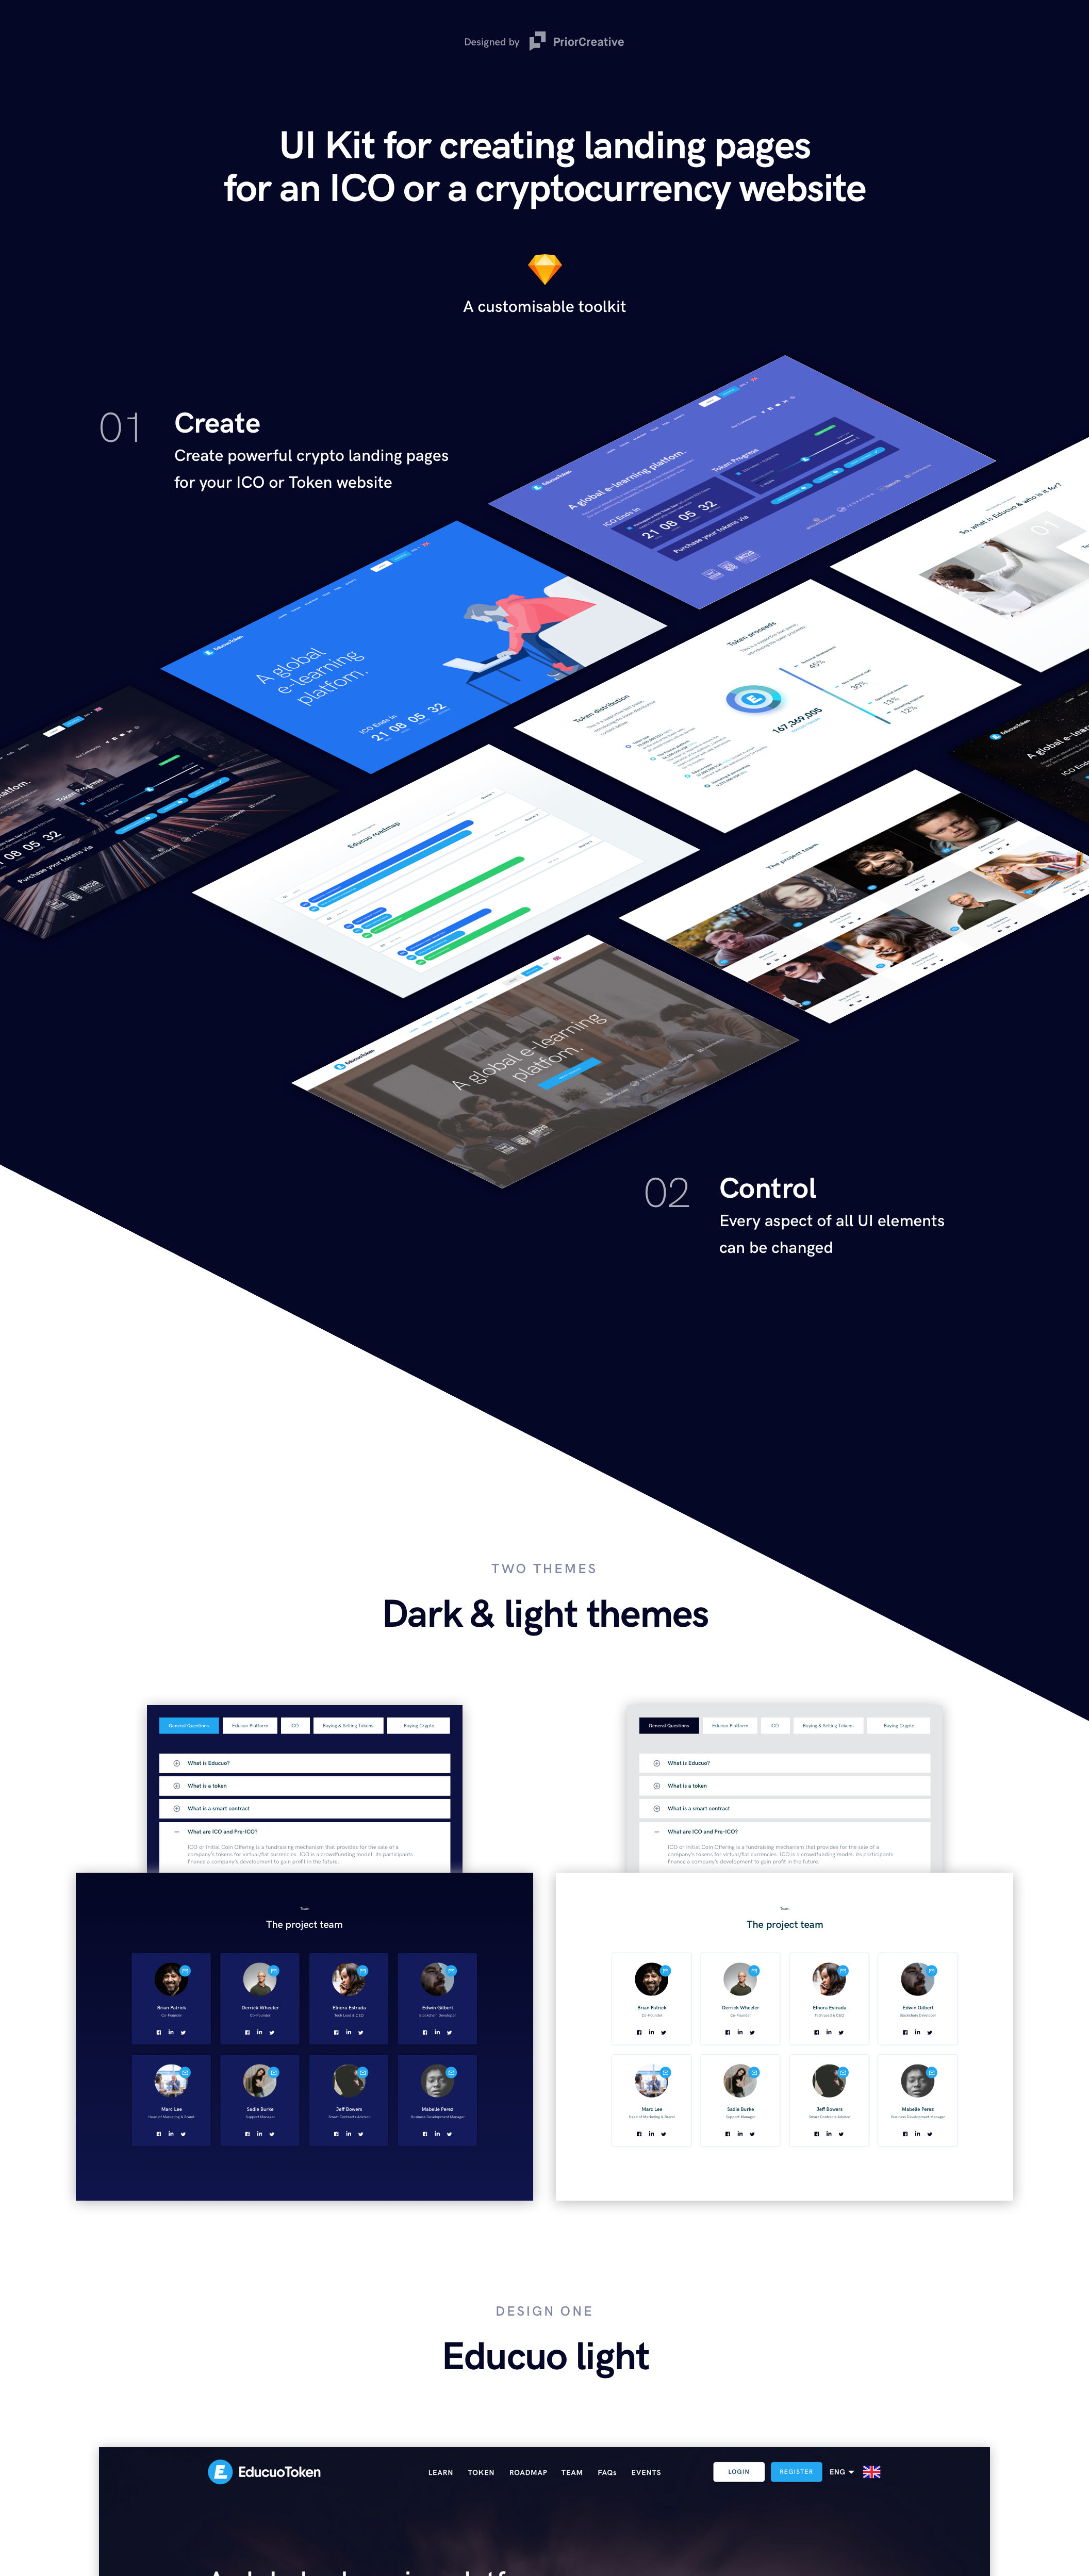 黑暗和光为主题的Web UI套件 Educuo ICO Web UI Kit插图15